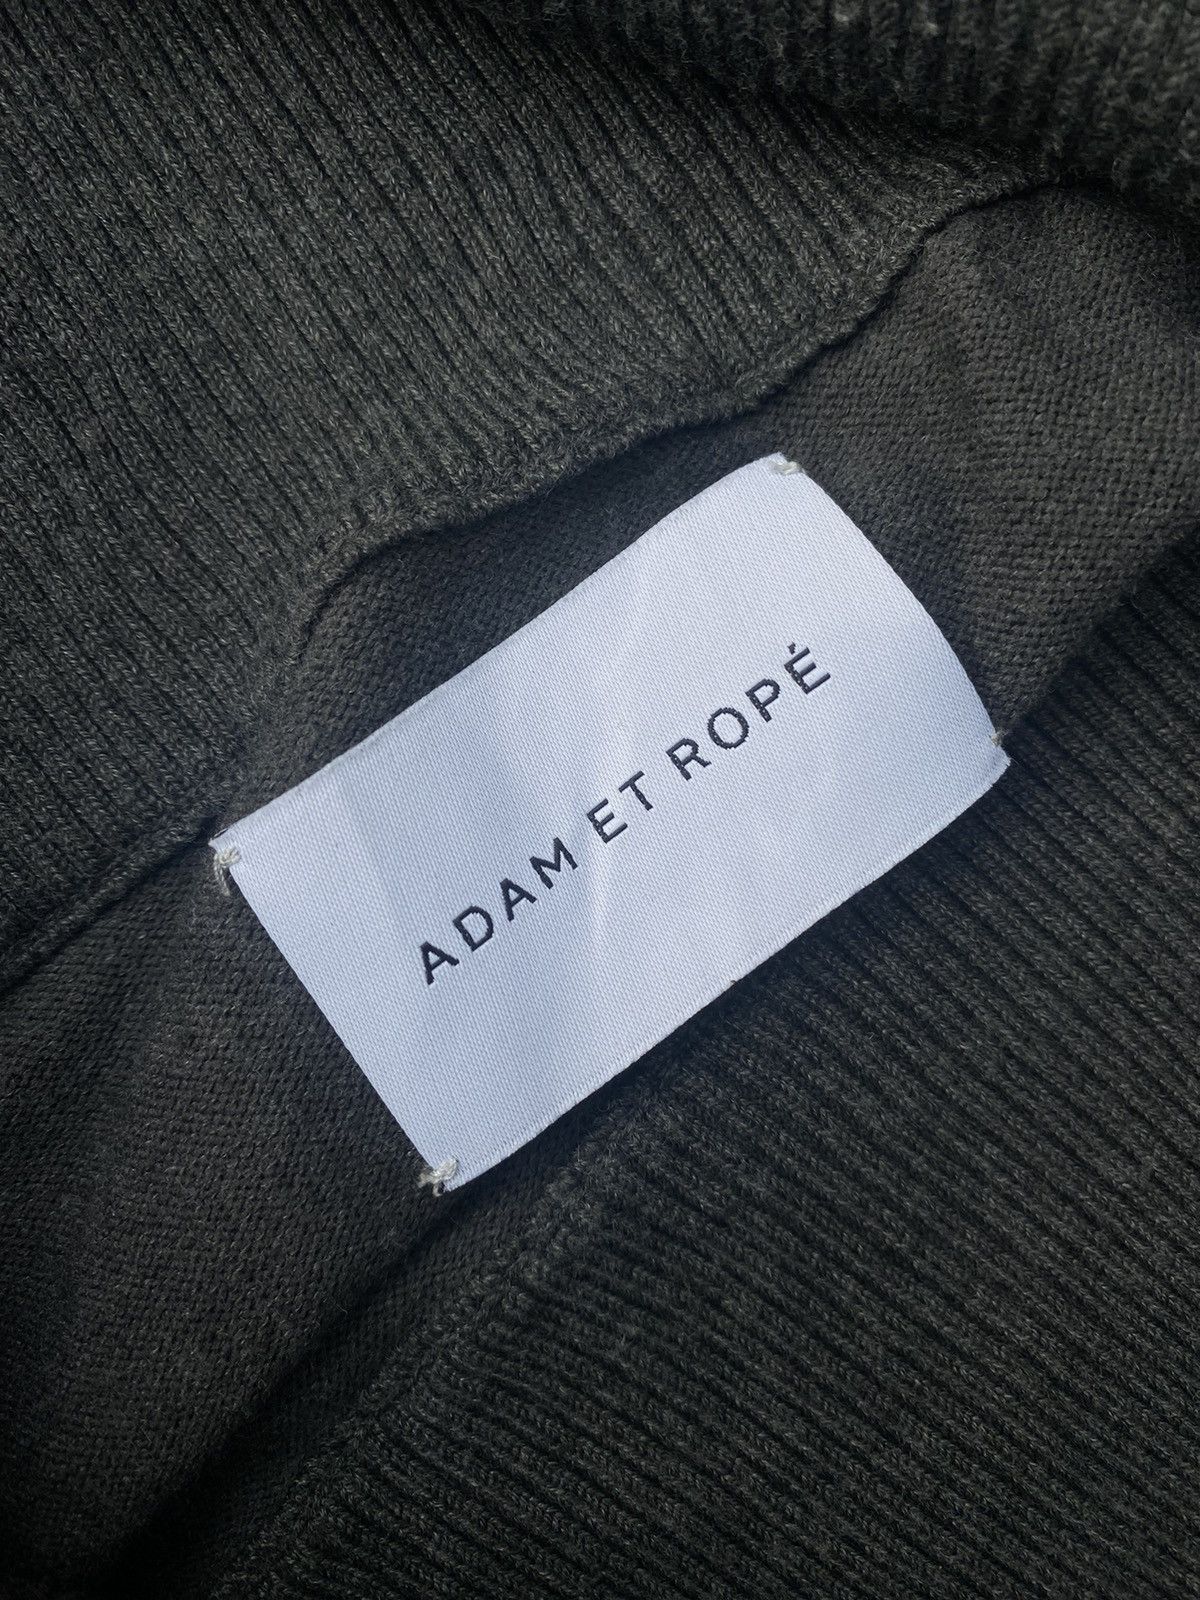 Vintage ⚡️Final drop⚡️ Adam et Rope turtleneck sweater long dresses Size S / US 4 / IT 40 - 6 Thumbnail